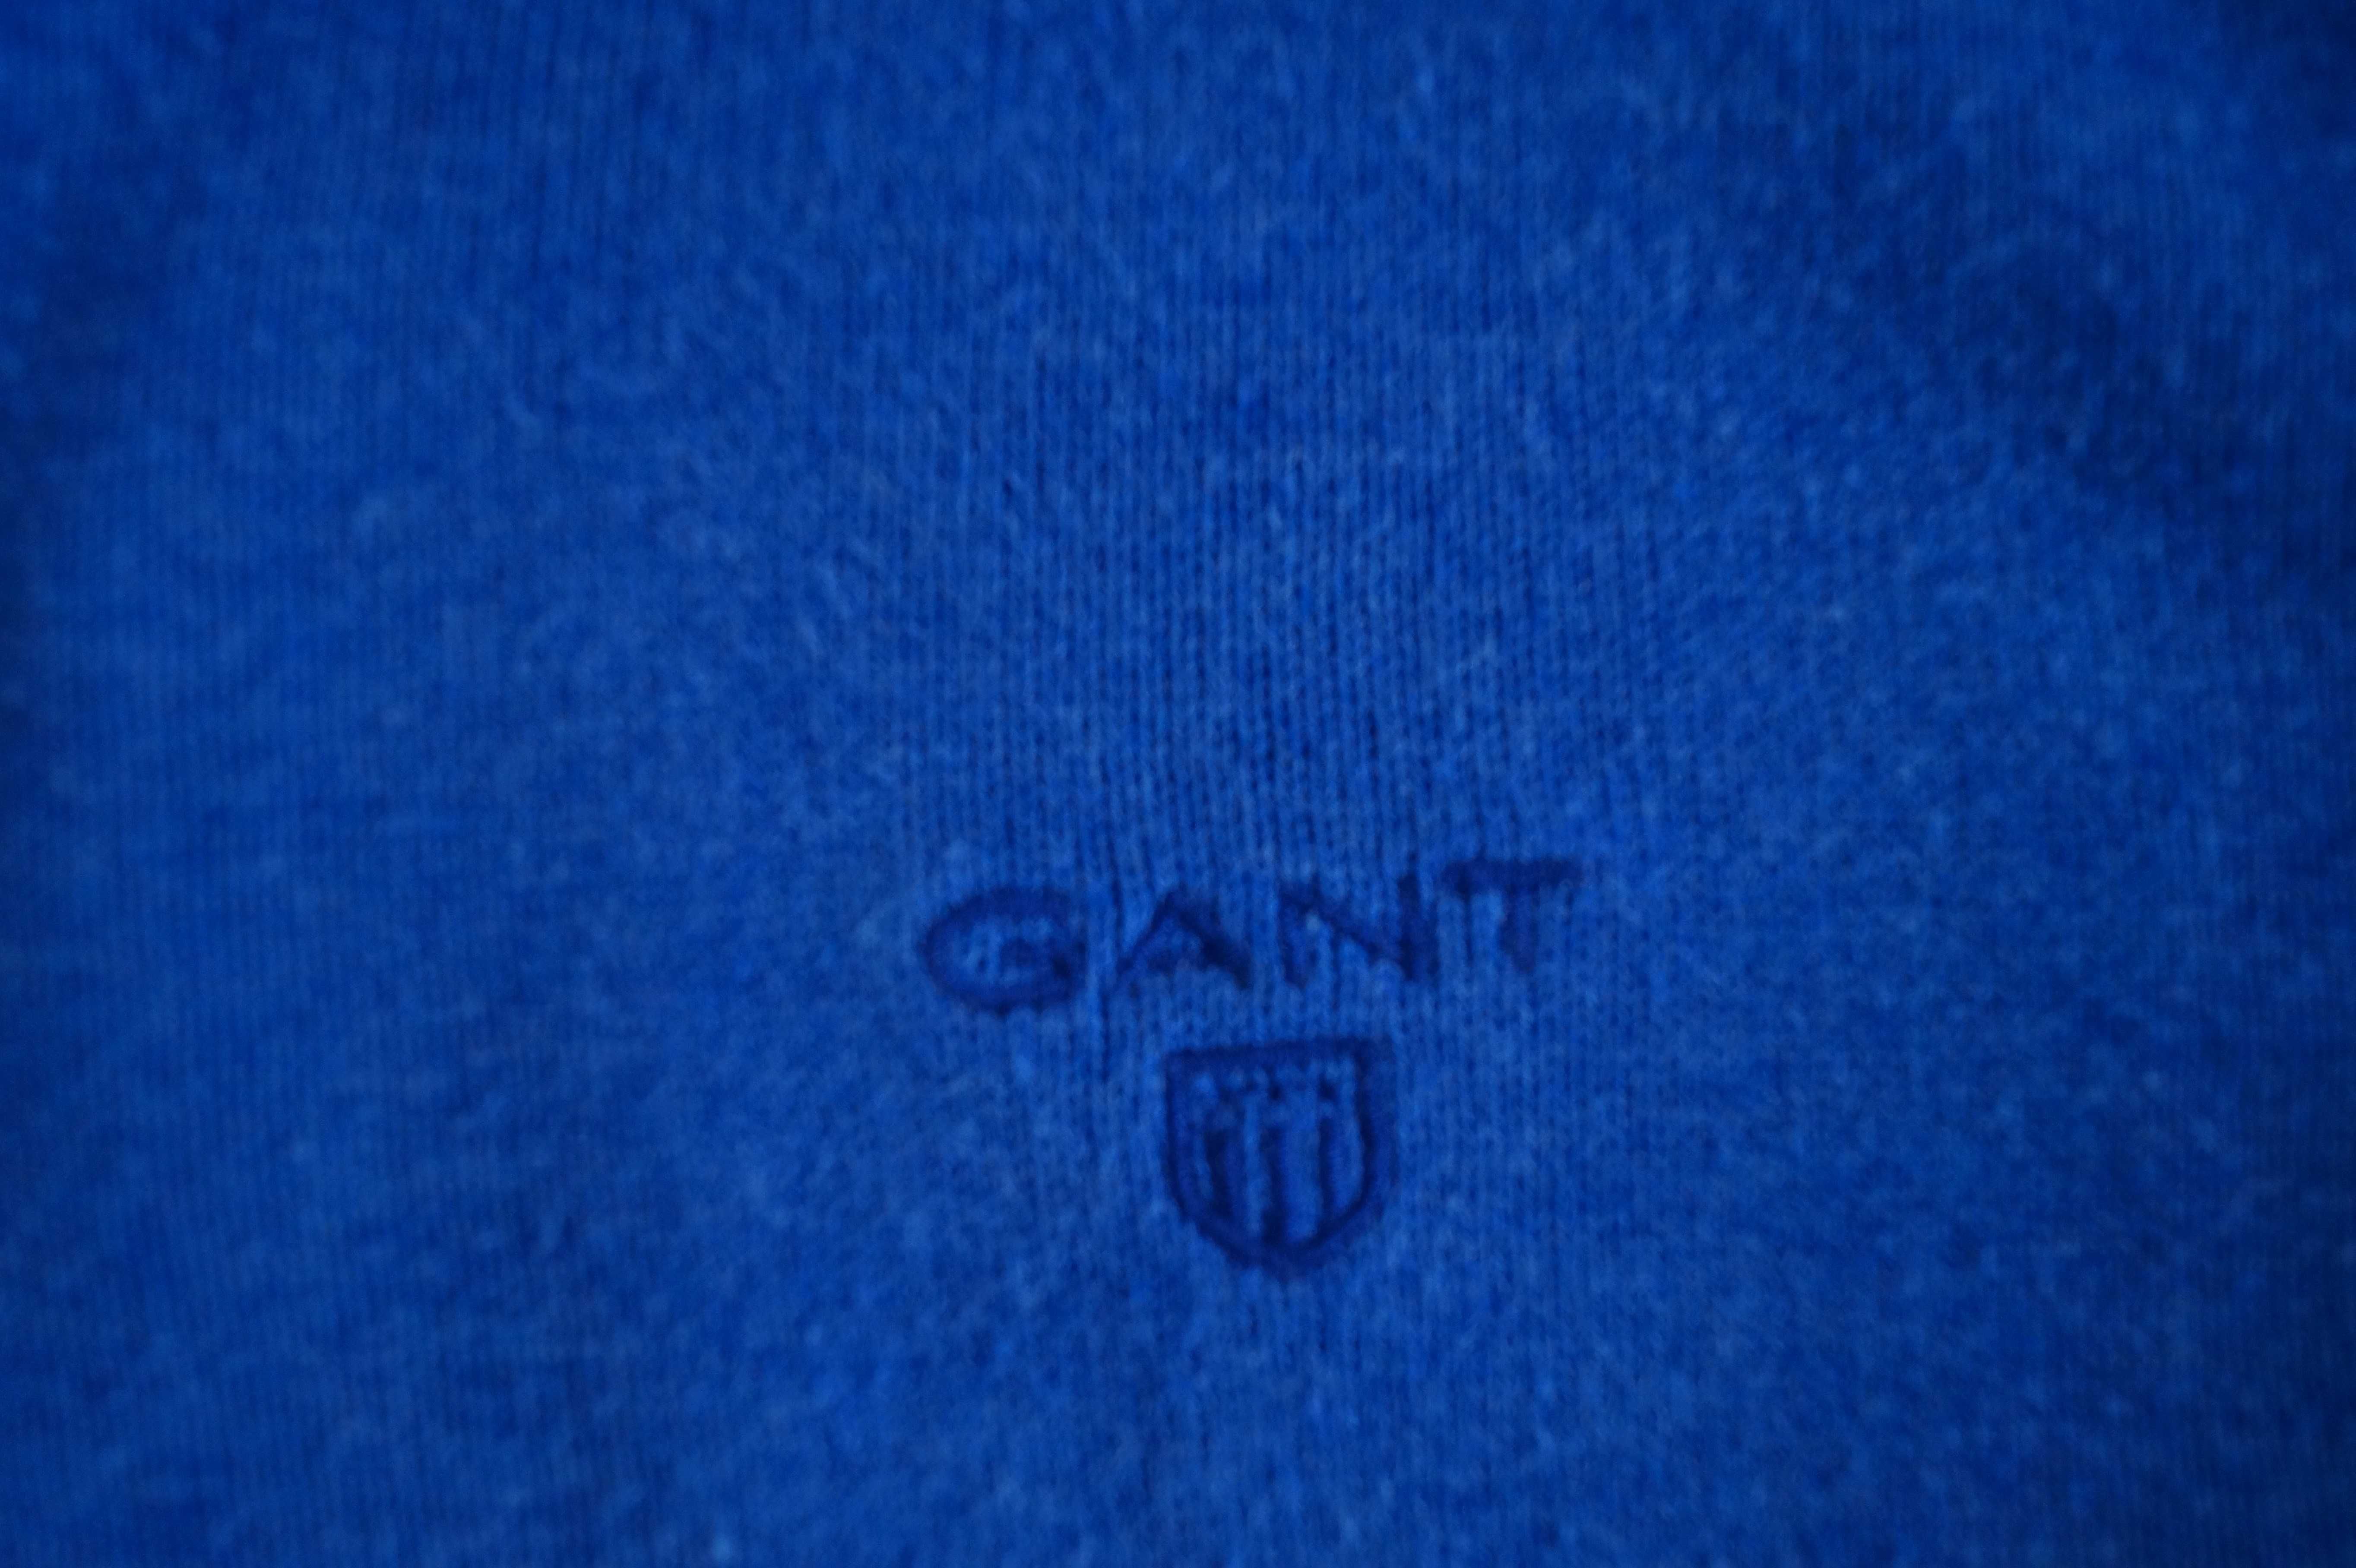 Gant sweter M bawełna 100% niebieski